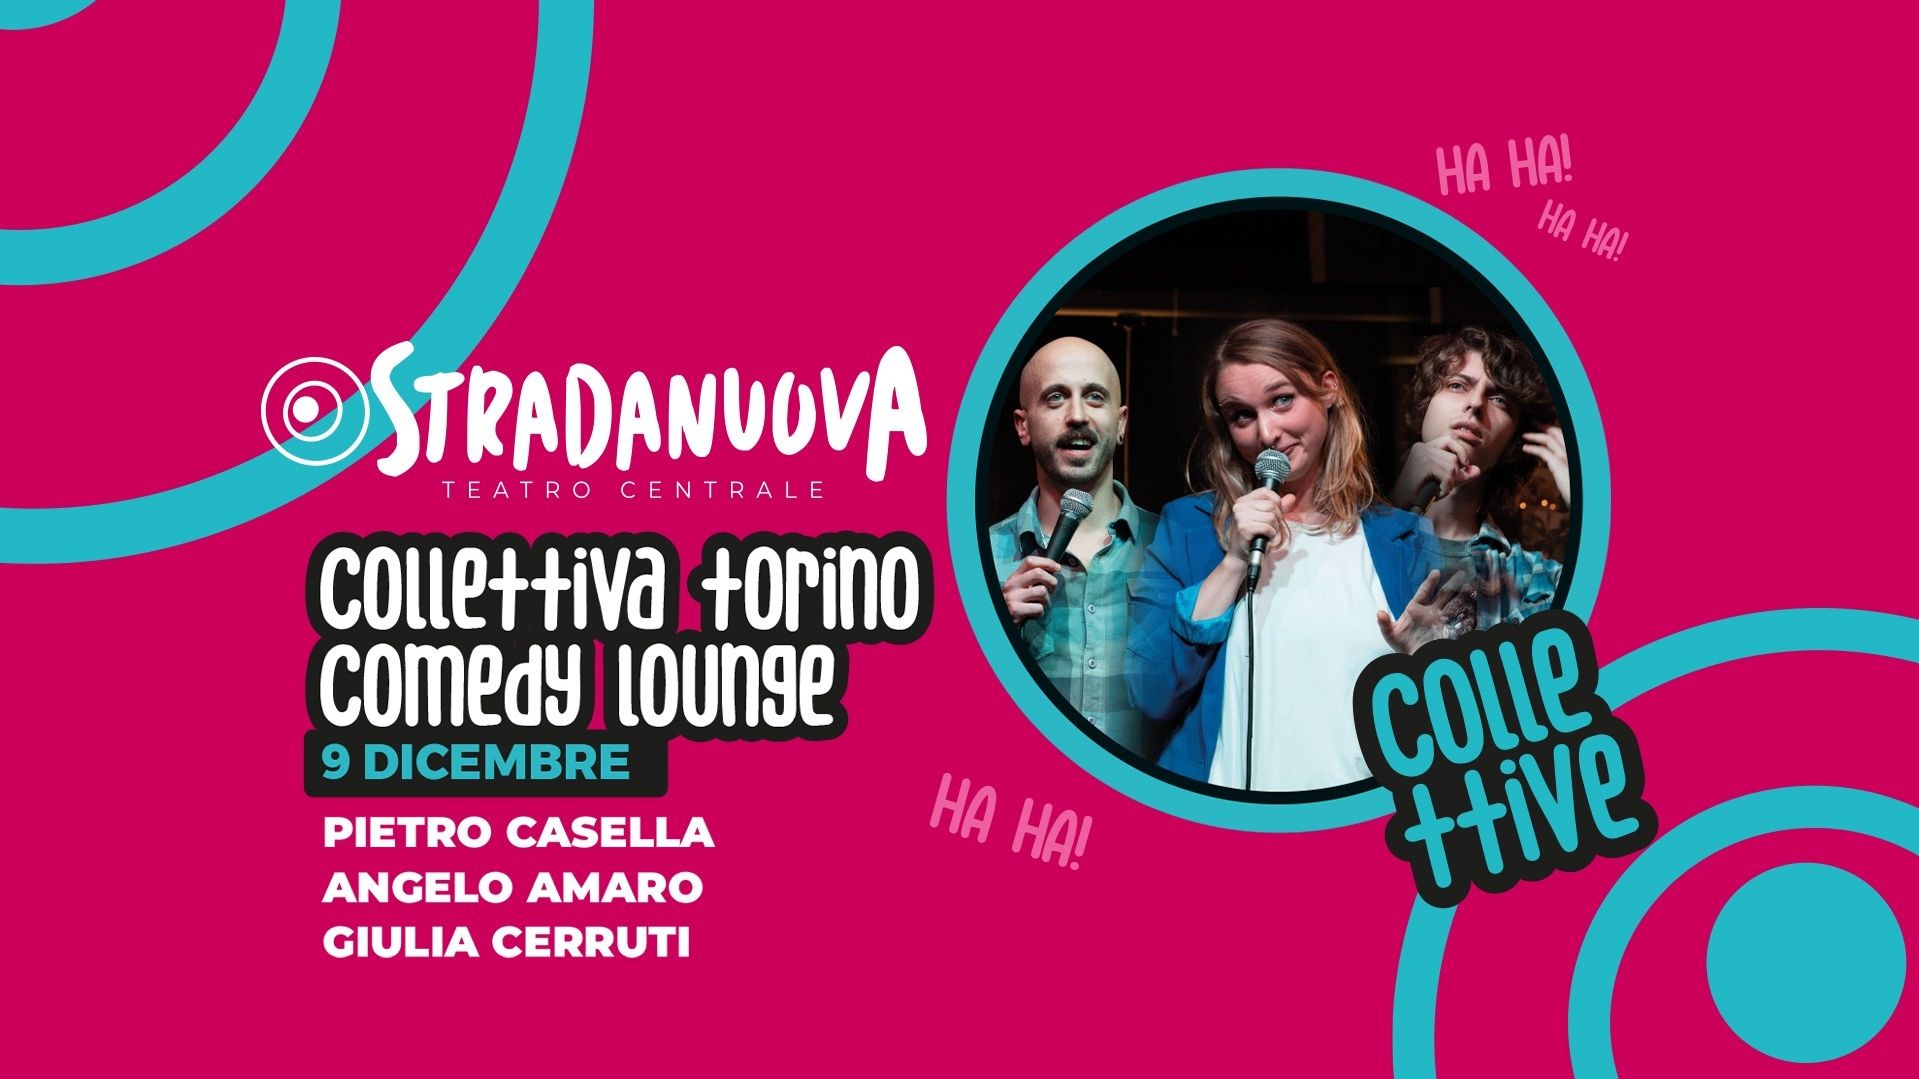 Pietro Casella, Angelo Amaro, Giulia Cerruti "Collettiva Torino Comedy Lounge"